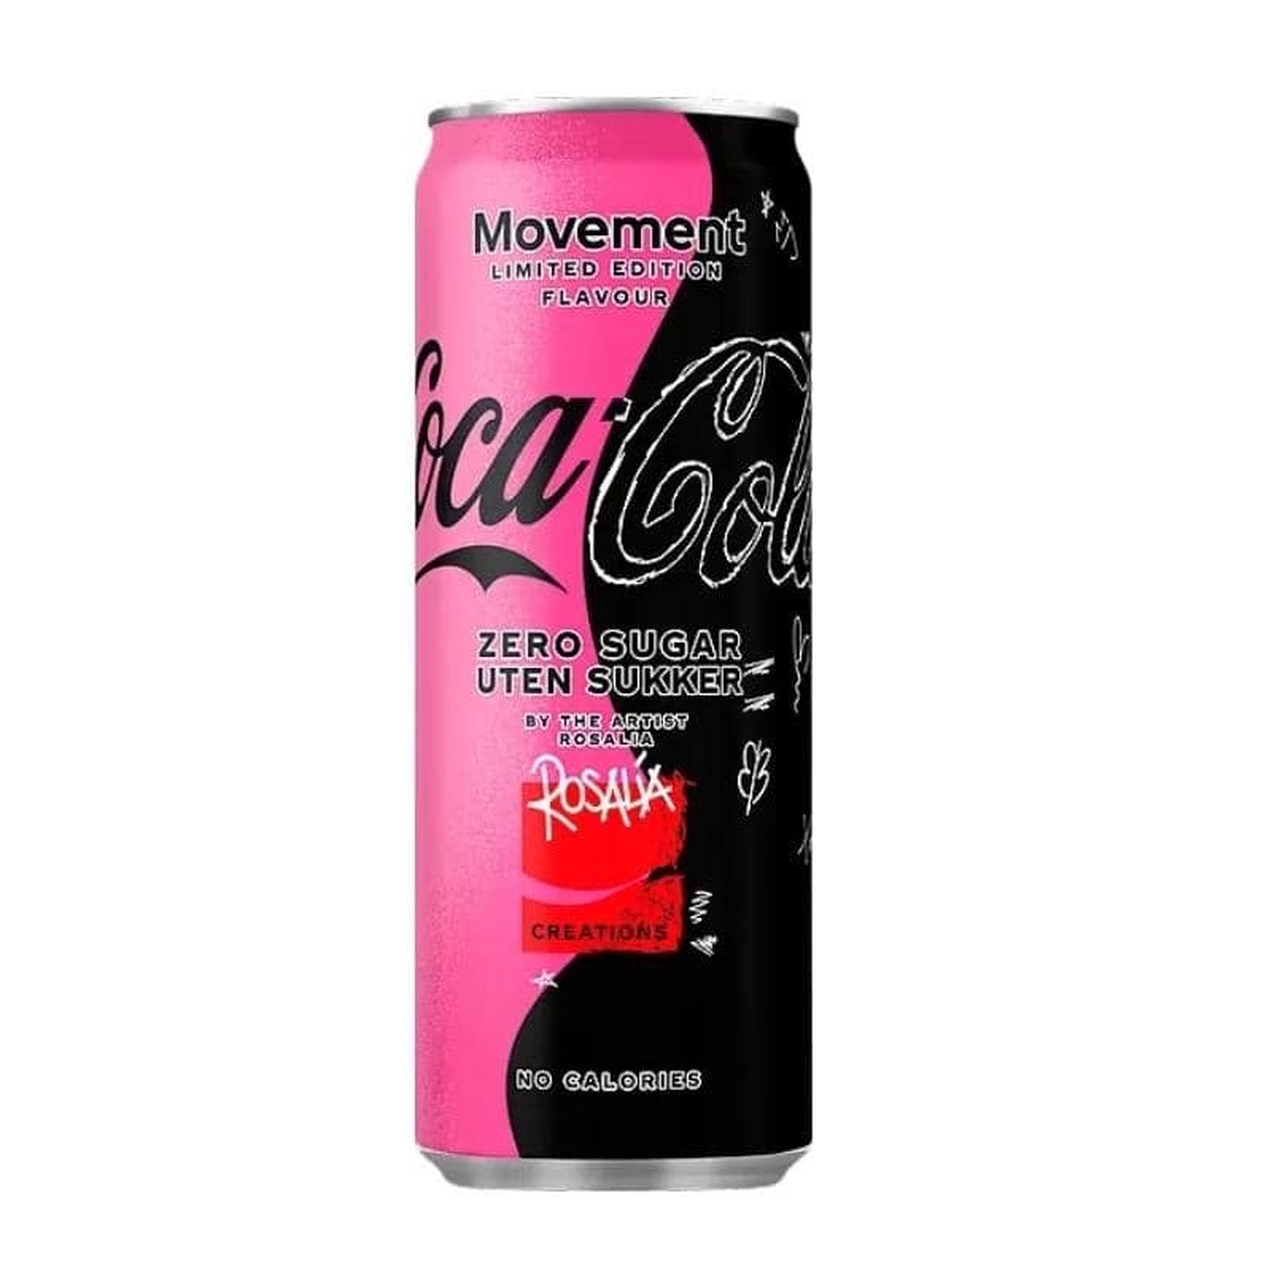 Coca-Cola lança mais um refrigerante de gosto inusitado — desta vez, de  “sonhos“